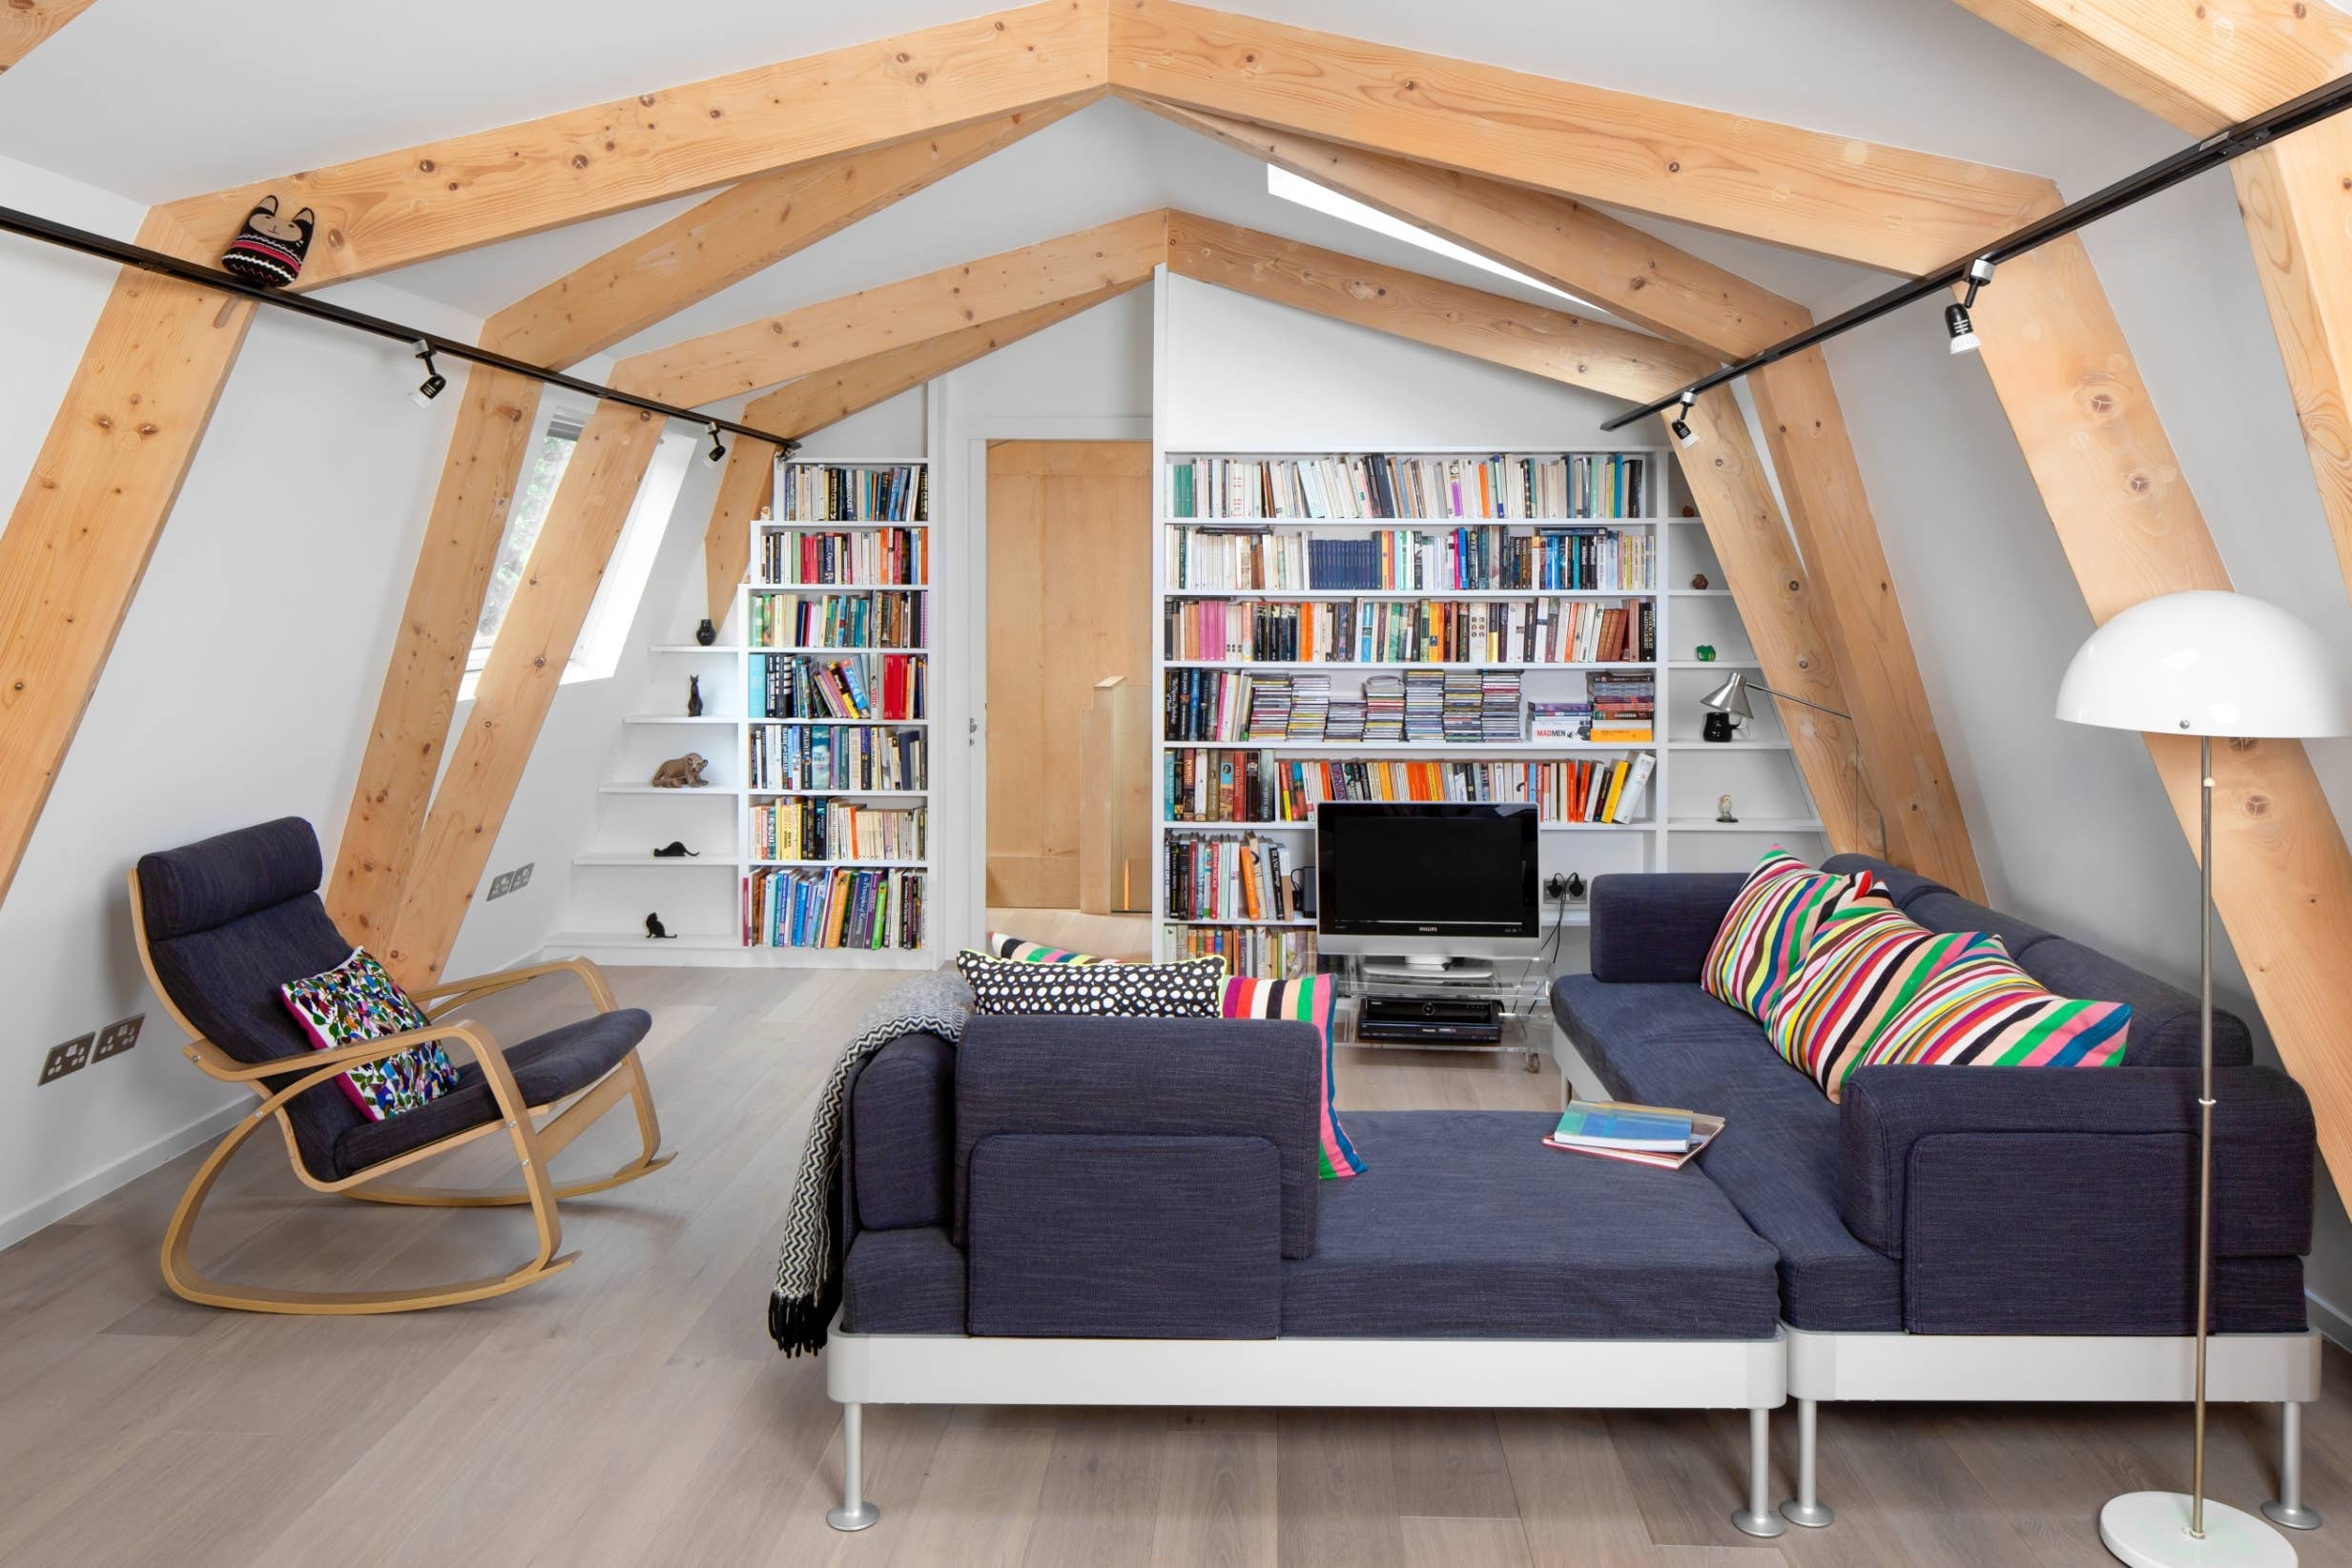 Interessanter Dachbodenraum - kleine Bibliothek